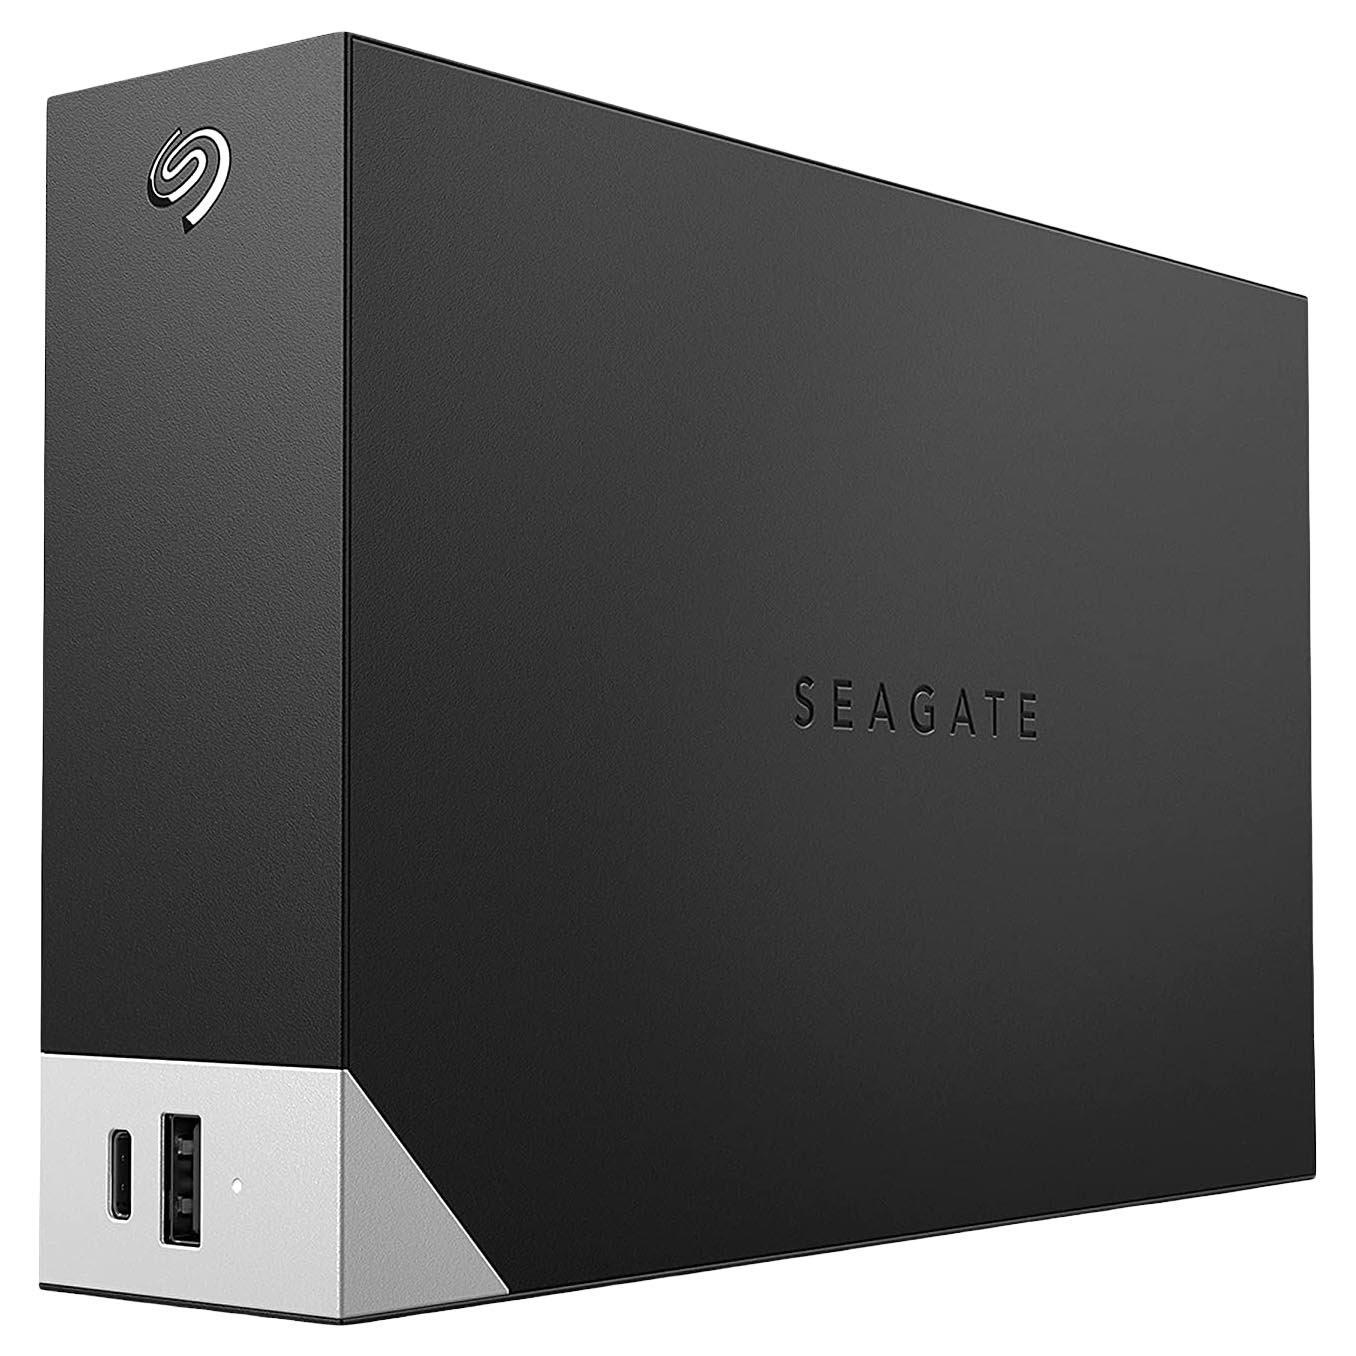 Внешний жесткий диск Seagate One Touch, STLC16000400, 16Тб, 3.5 внешний жесткий диск 2 5 4 tb usb 3 0 seagate one touch stkc4000401 серебристый